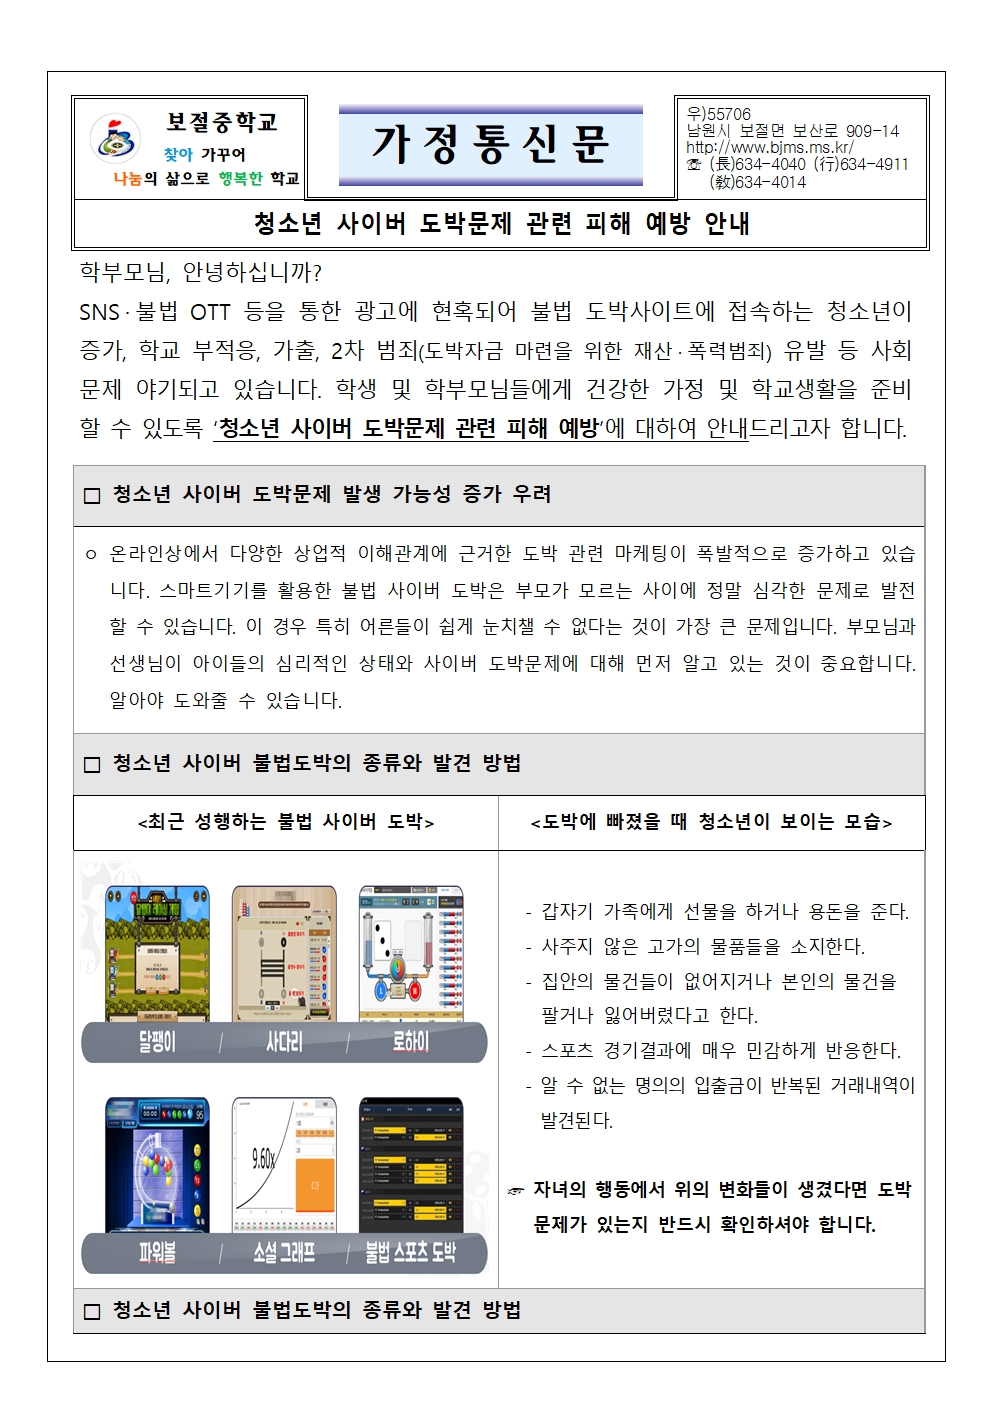 청소년 사이버 도박문제 피해 예방 가정통신문-보절중001